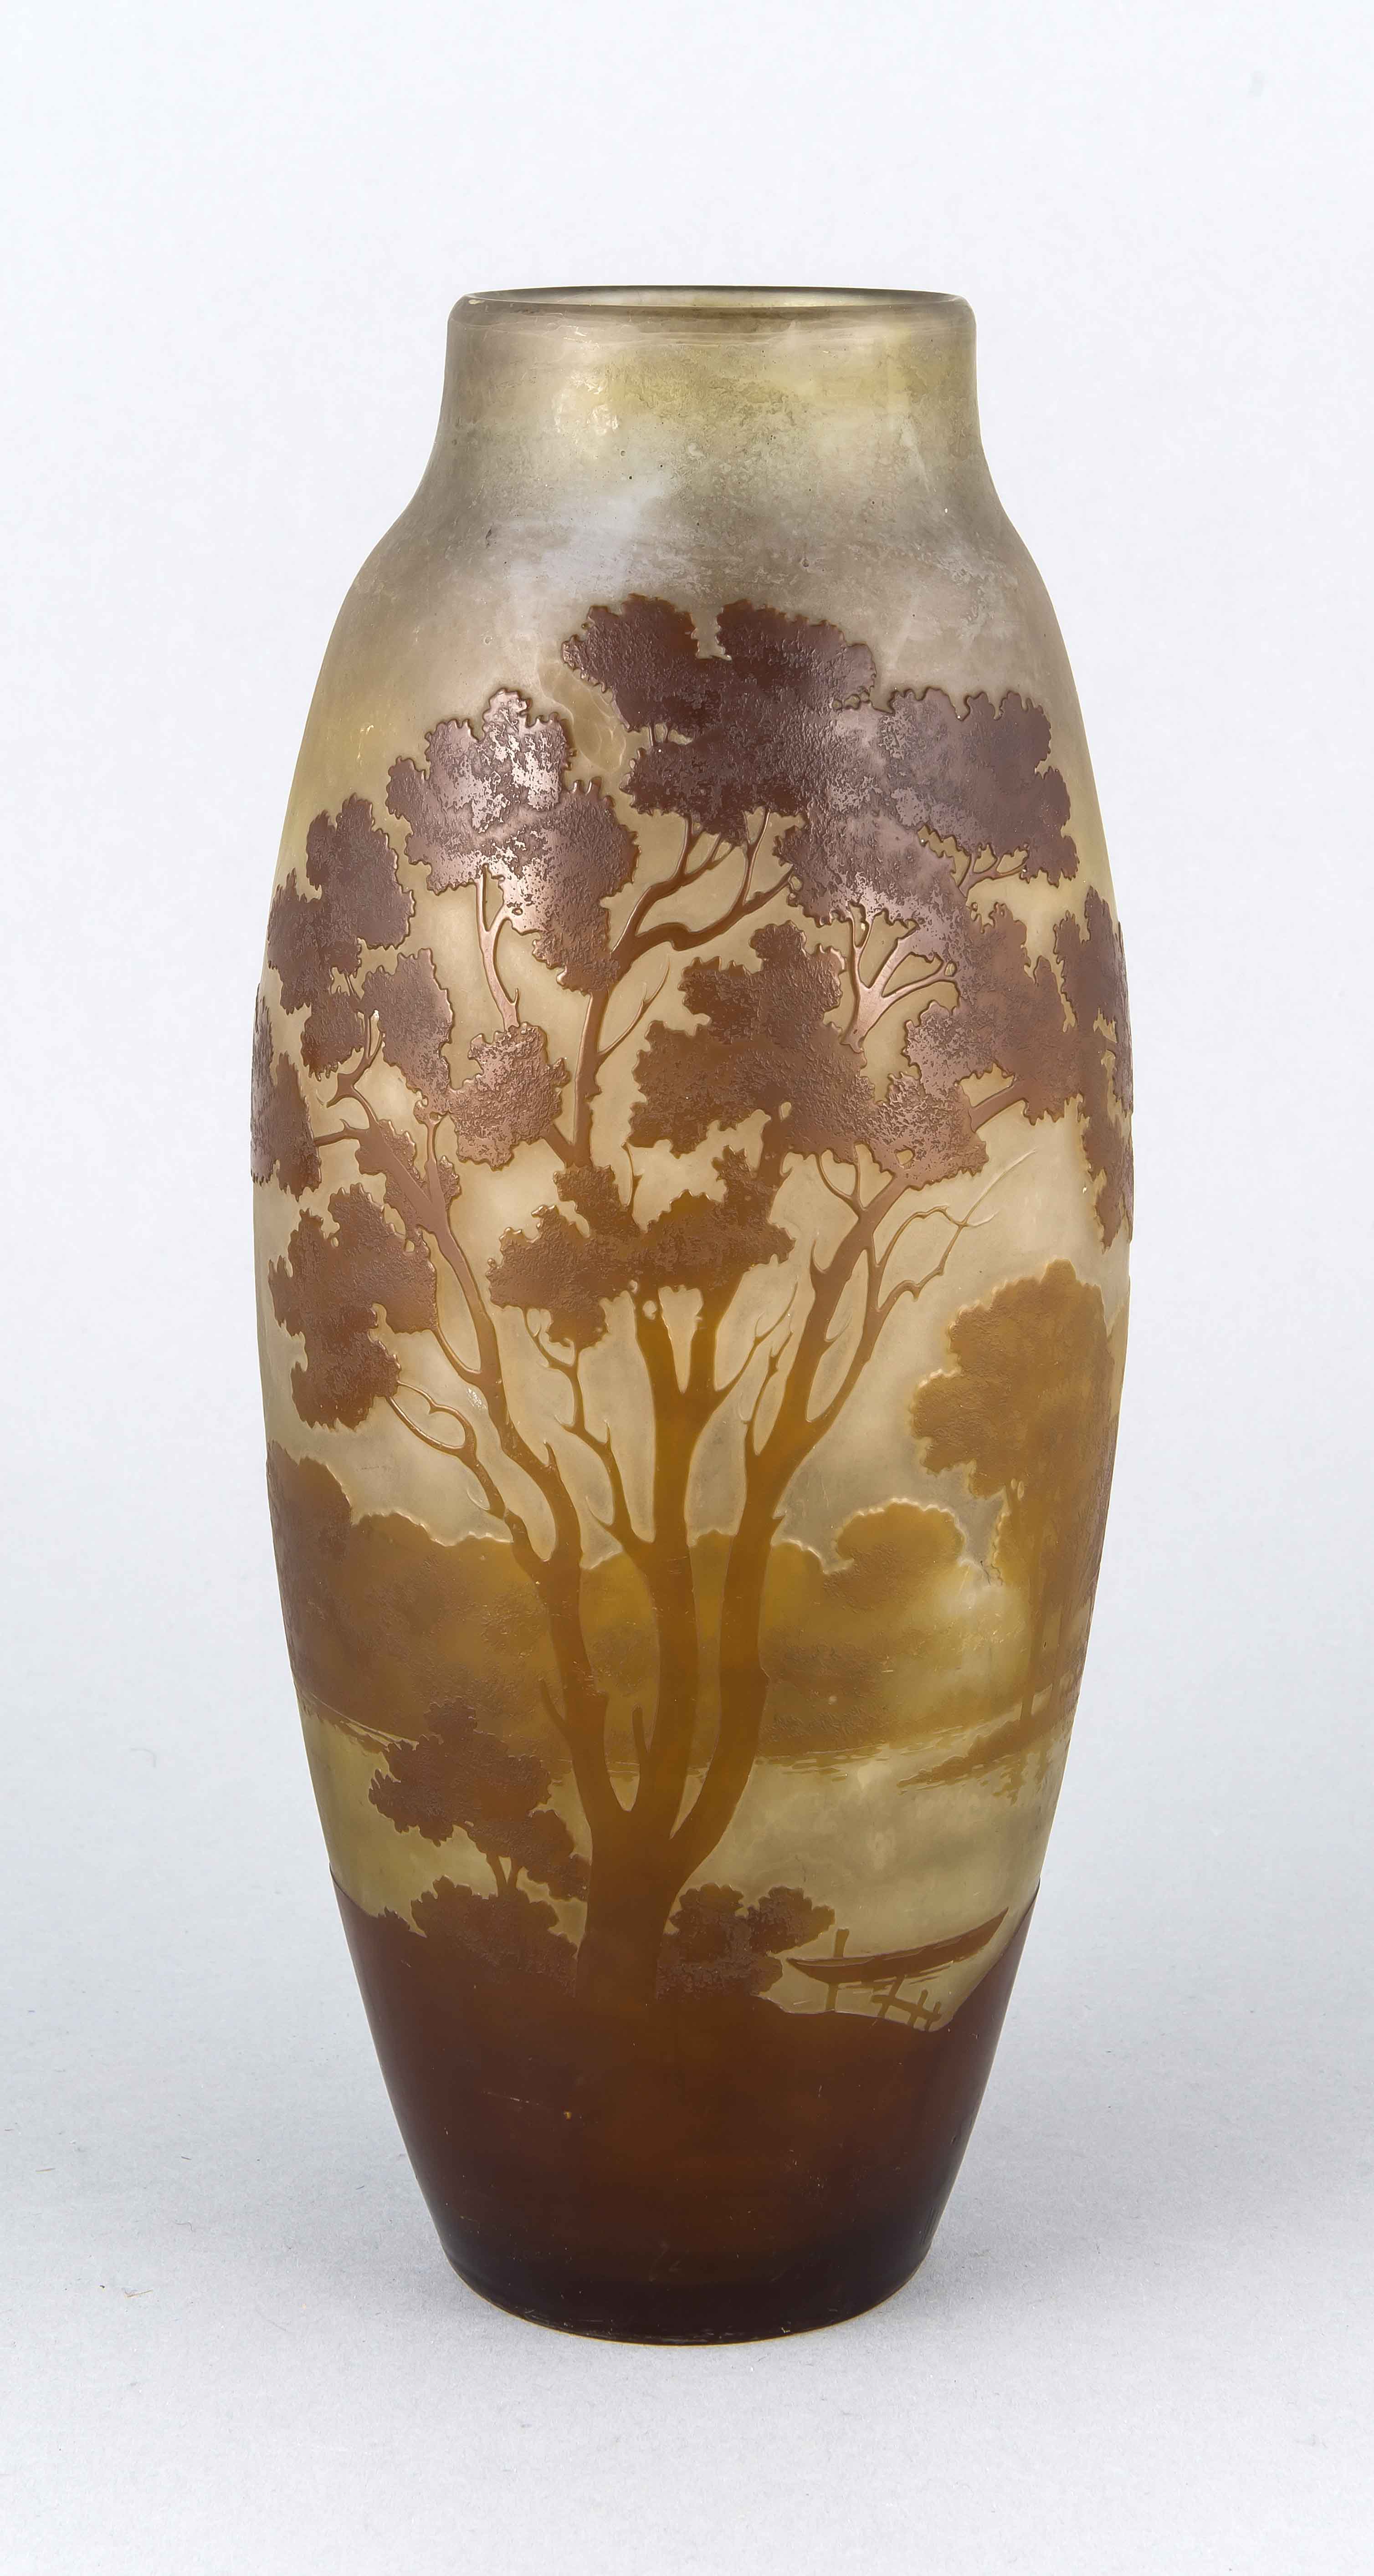 Vase, Frankreich, Emile Gallé, um 1920, ovale Form, grünlich-braunes Glas, braunüberfangen, mit